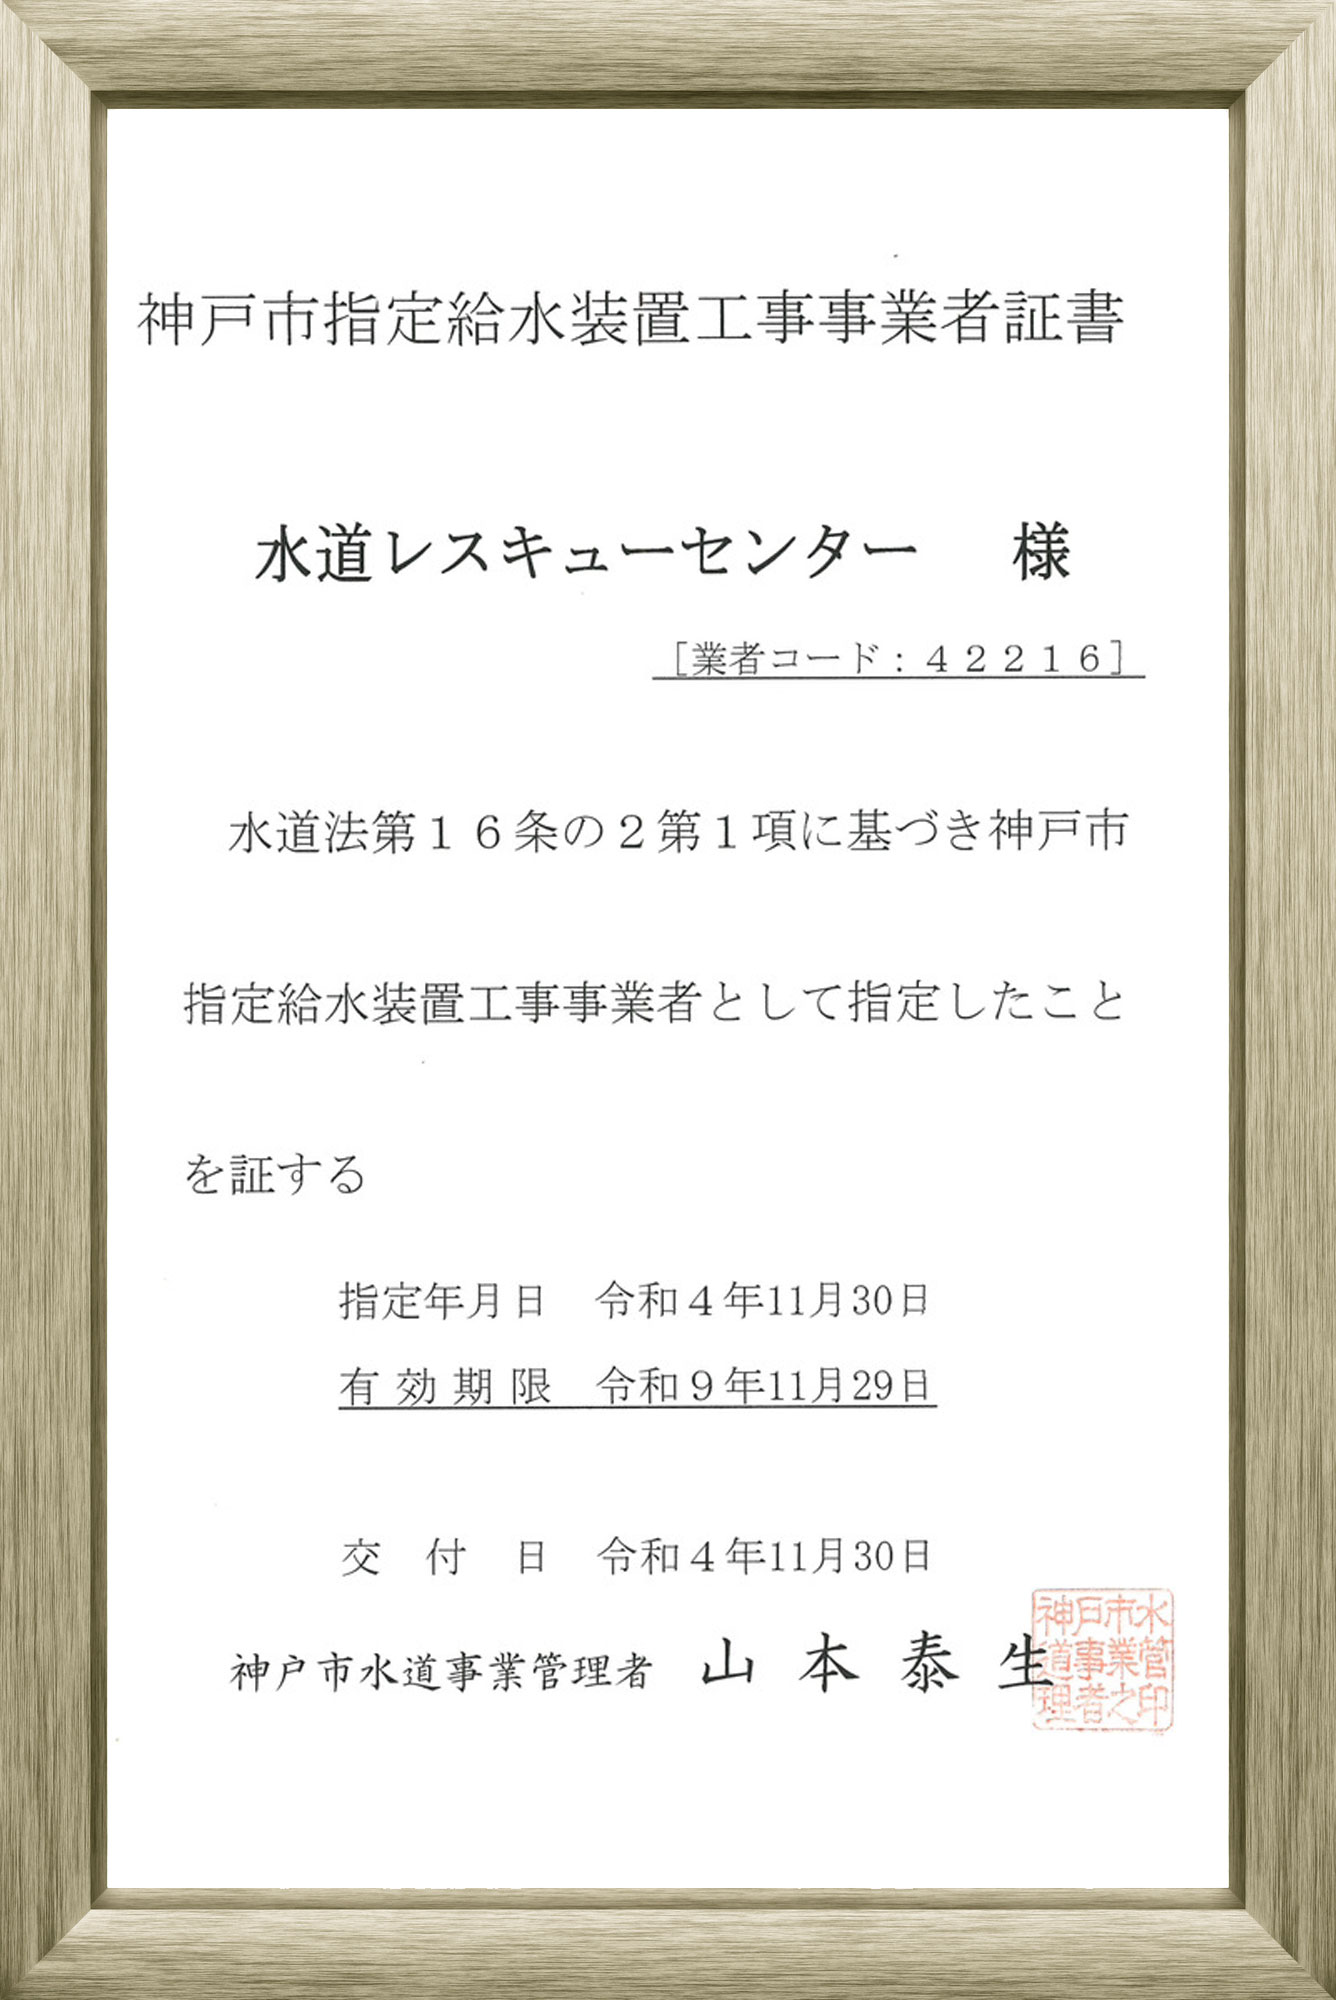 神戸市指定給水装置工事事業者